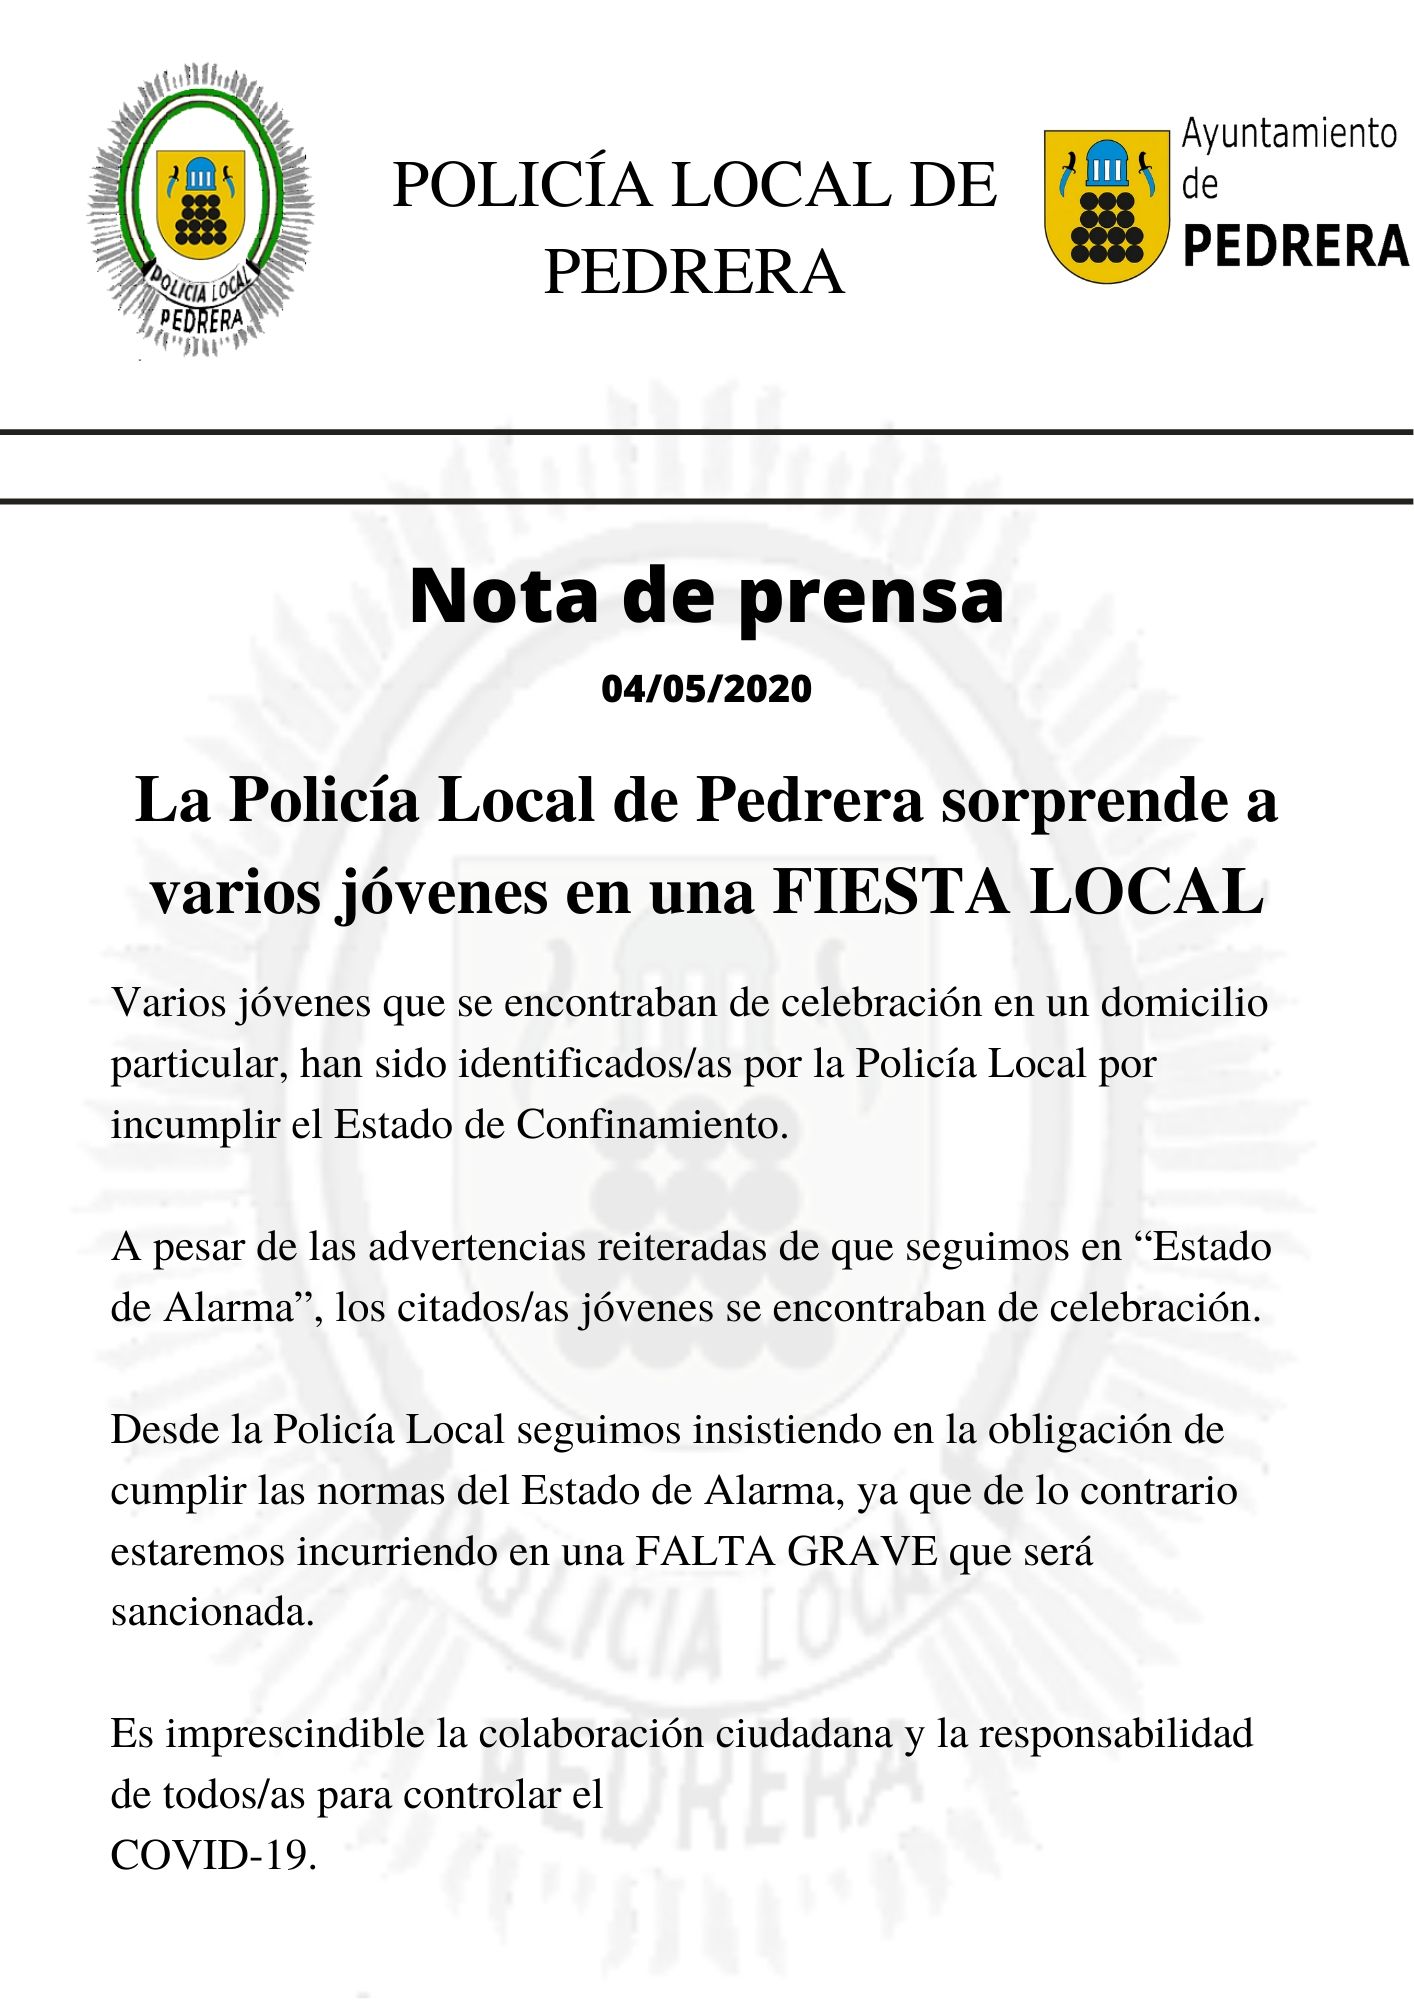 POLICÍA LOCAL DE PEDRERA (1)